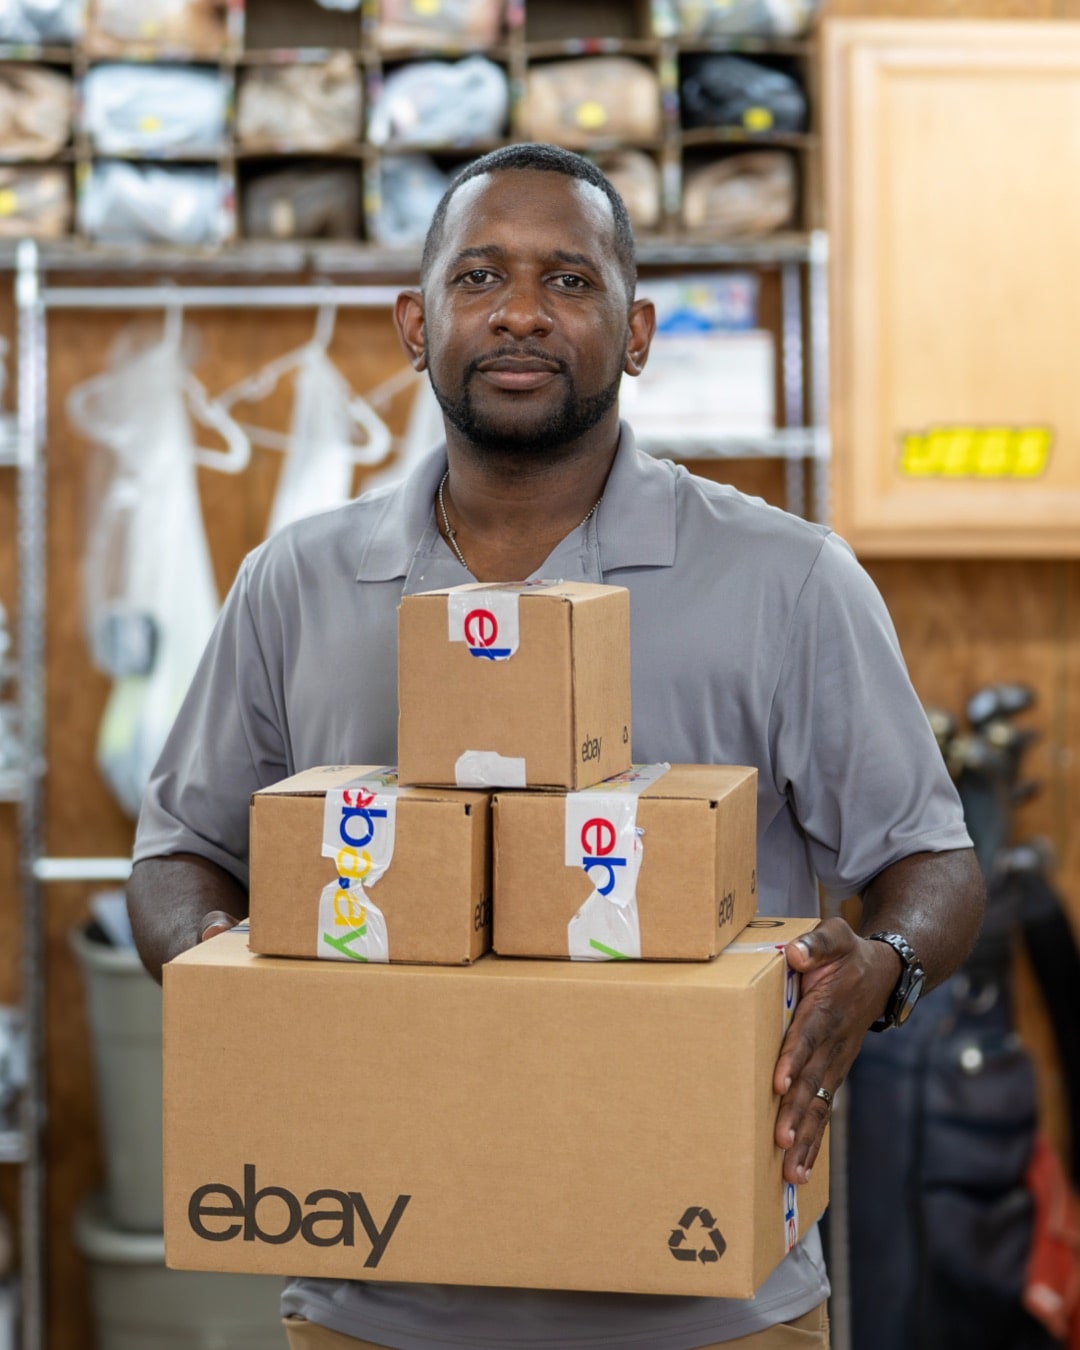 eBay seller holding boxes ready for shipment.